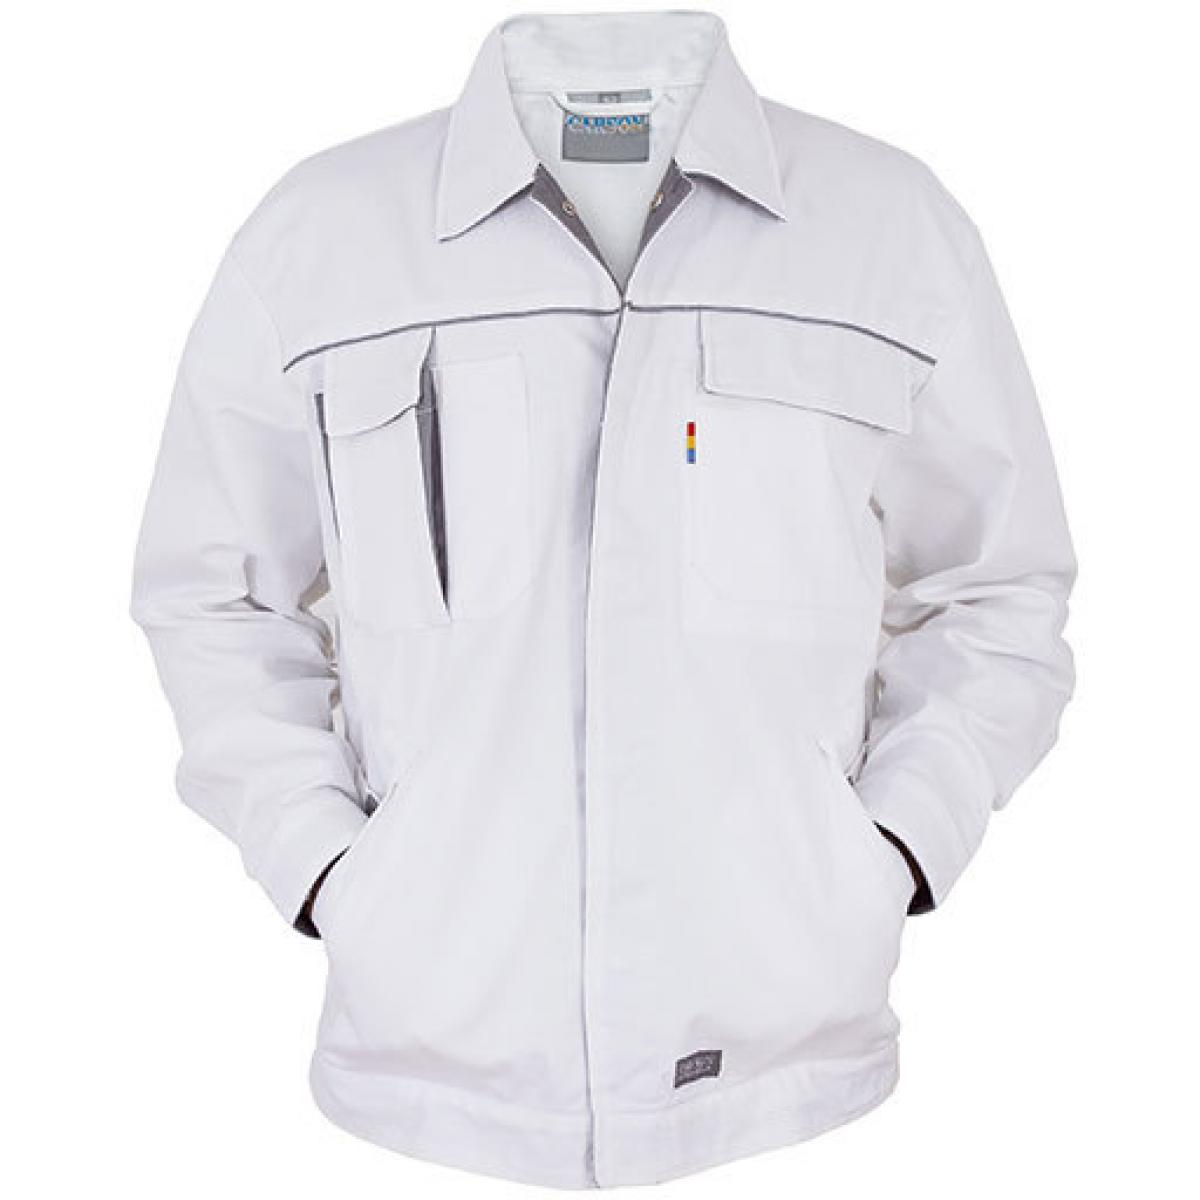 Hersteller: Carson Contrast Herstellernummer: CC710 Artikelbezeichnung: Herren Contrast Work Jacket / Bei 60 Grad waschbar Farbe: White/Grey